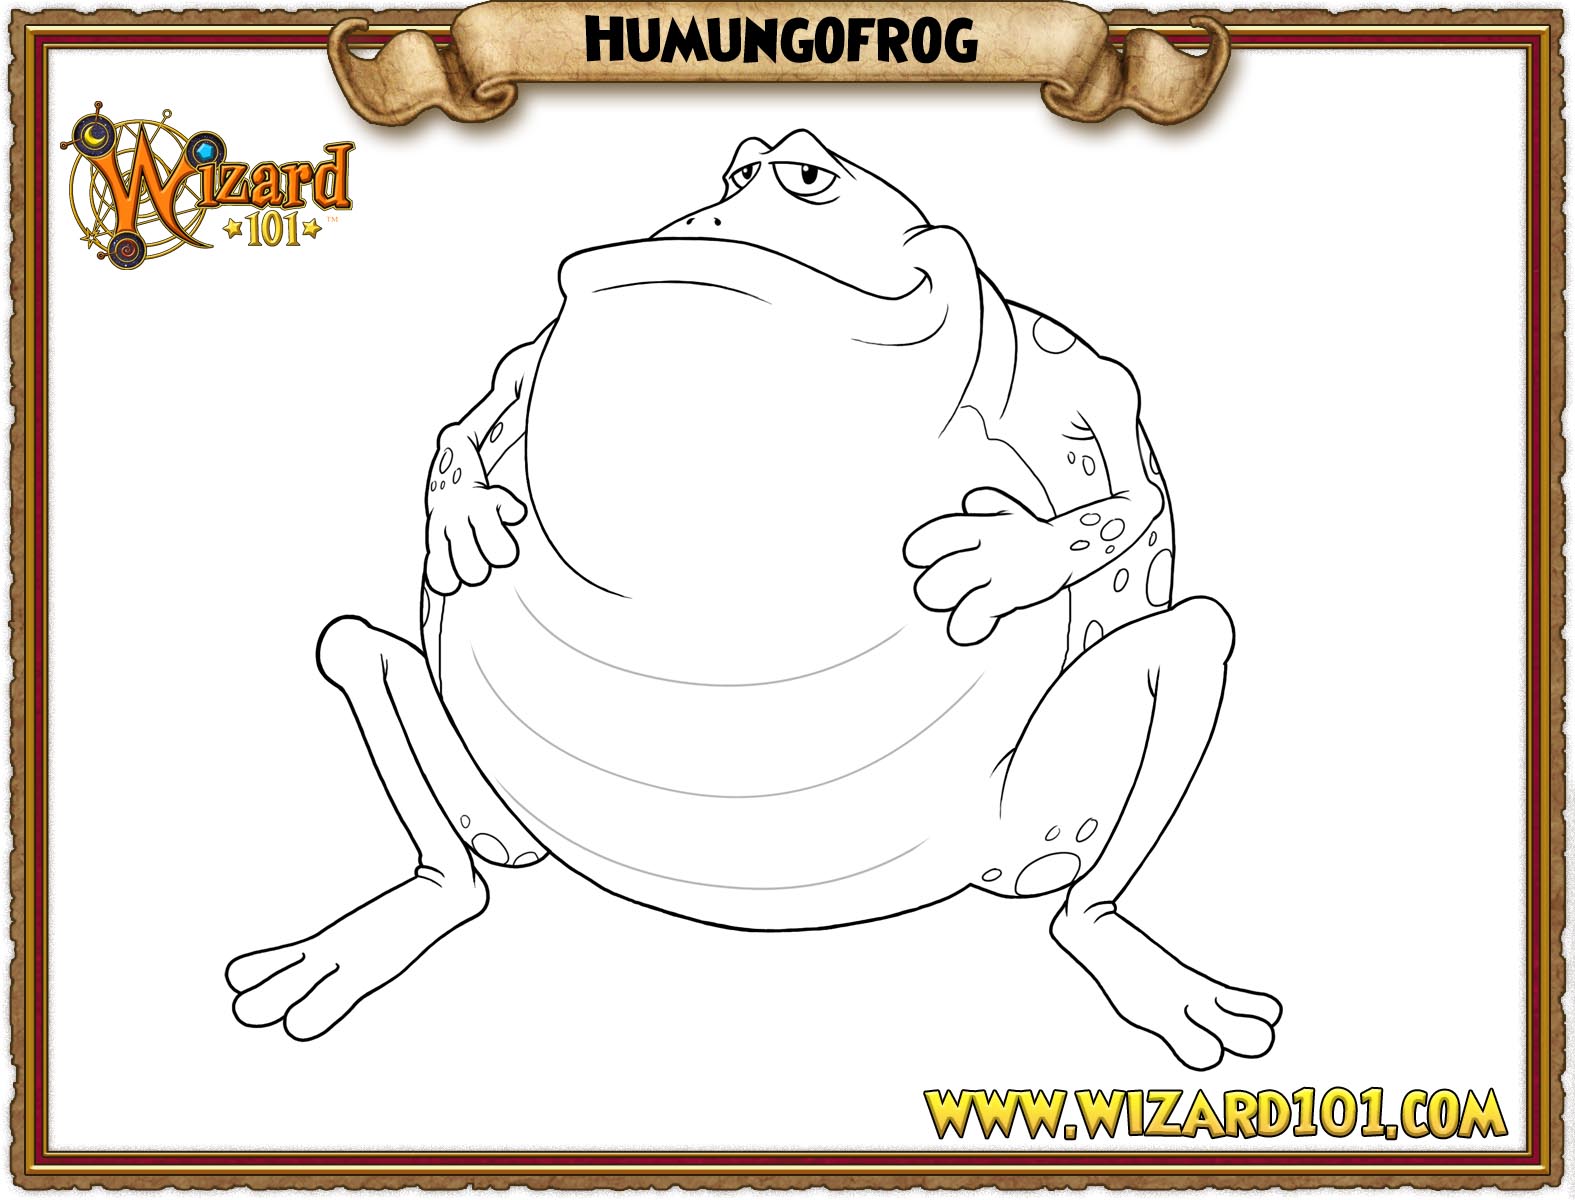 Hummonfrog